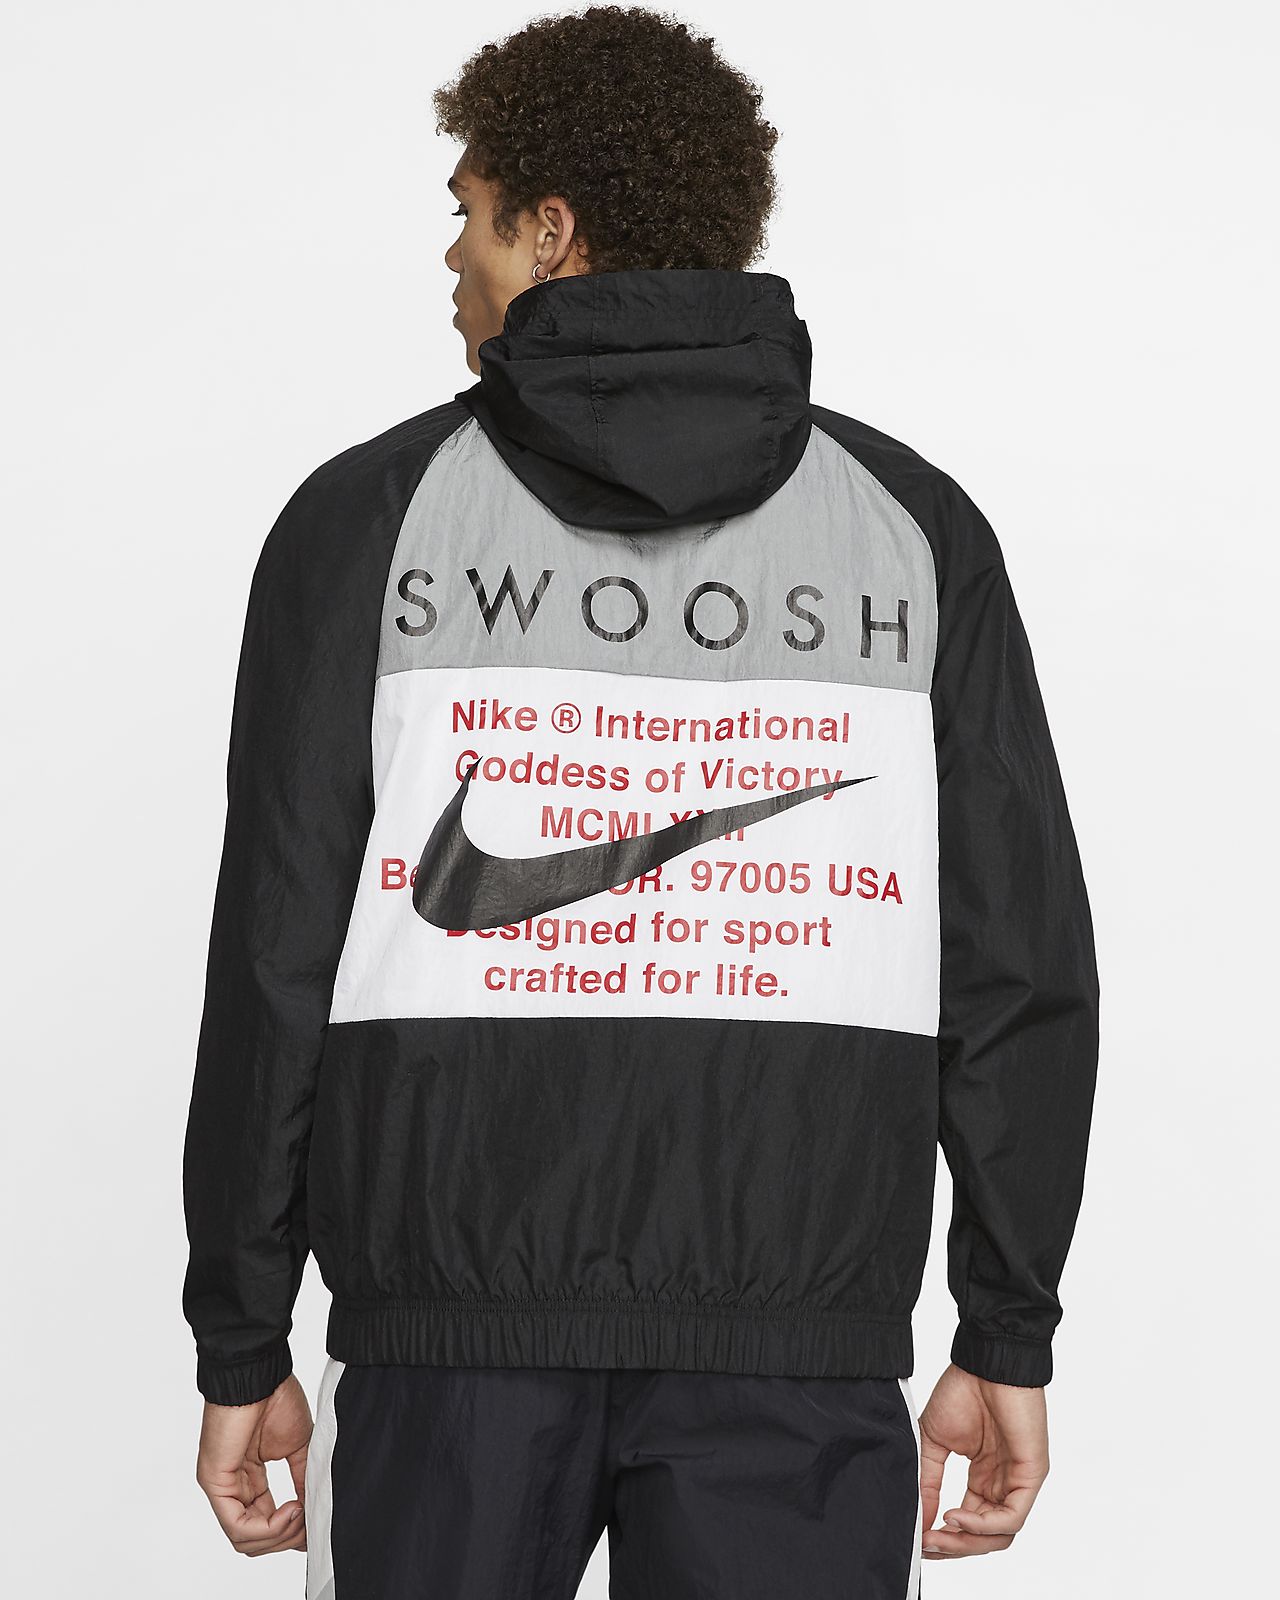 swoosh clothing